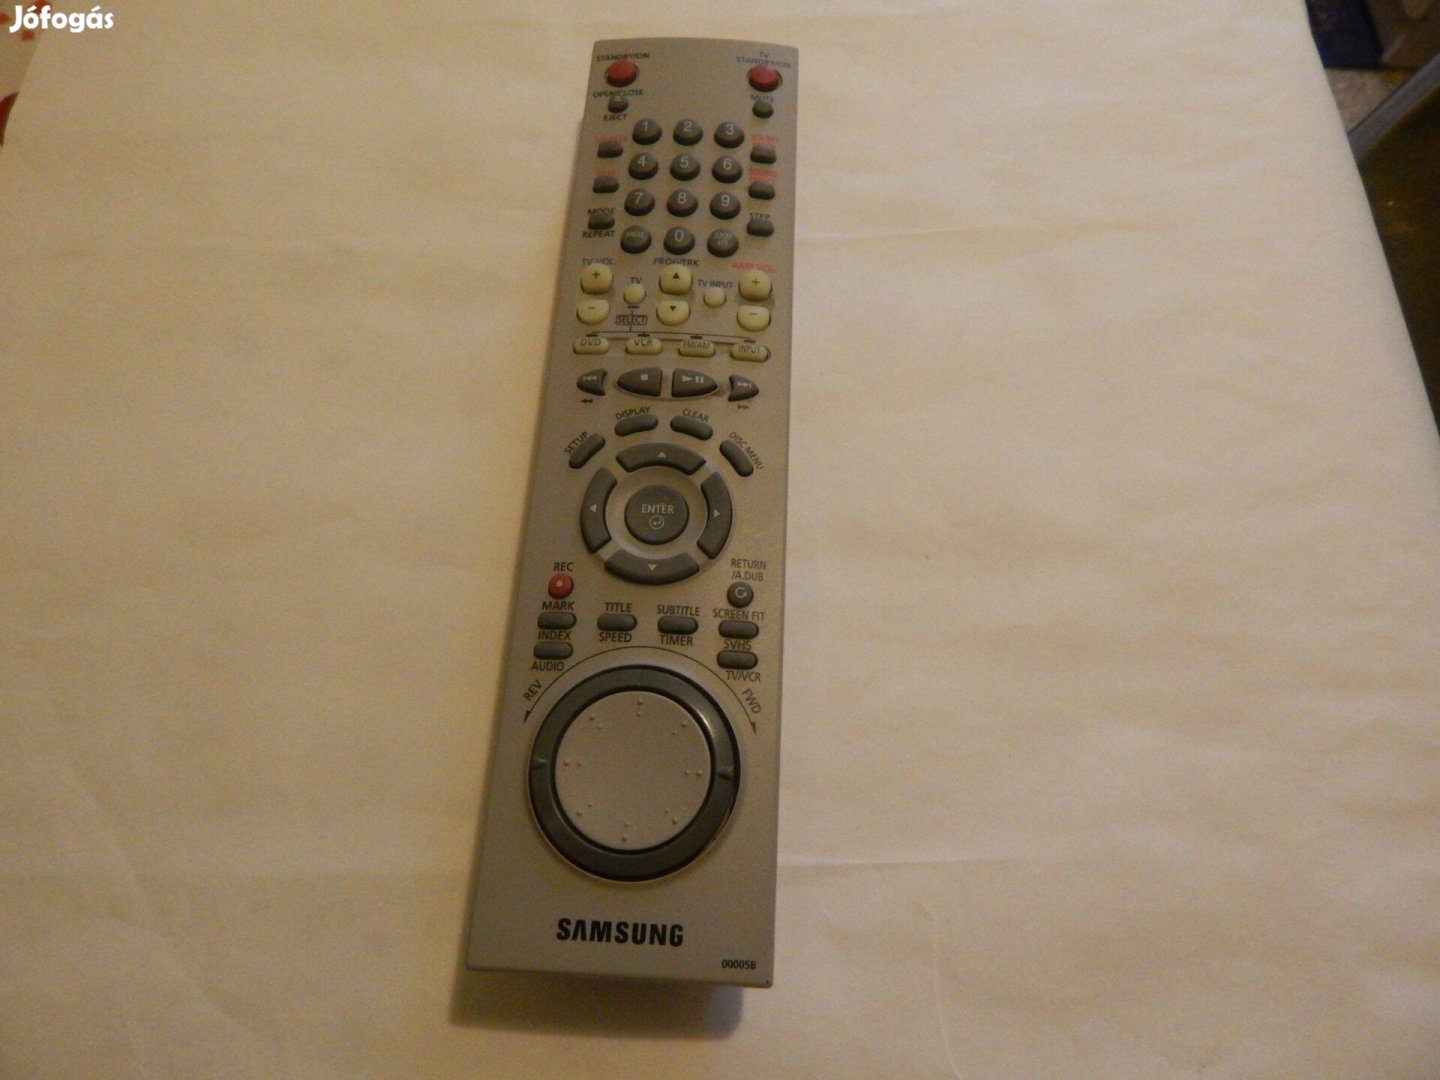 Samsung AK59-00005 tipusú DVD-VHS Combi Erősítő Távirányítója Eredeti